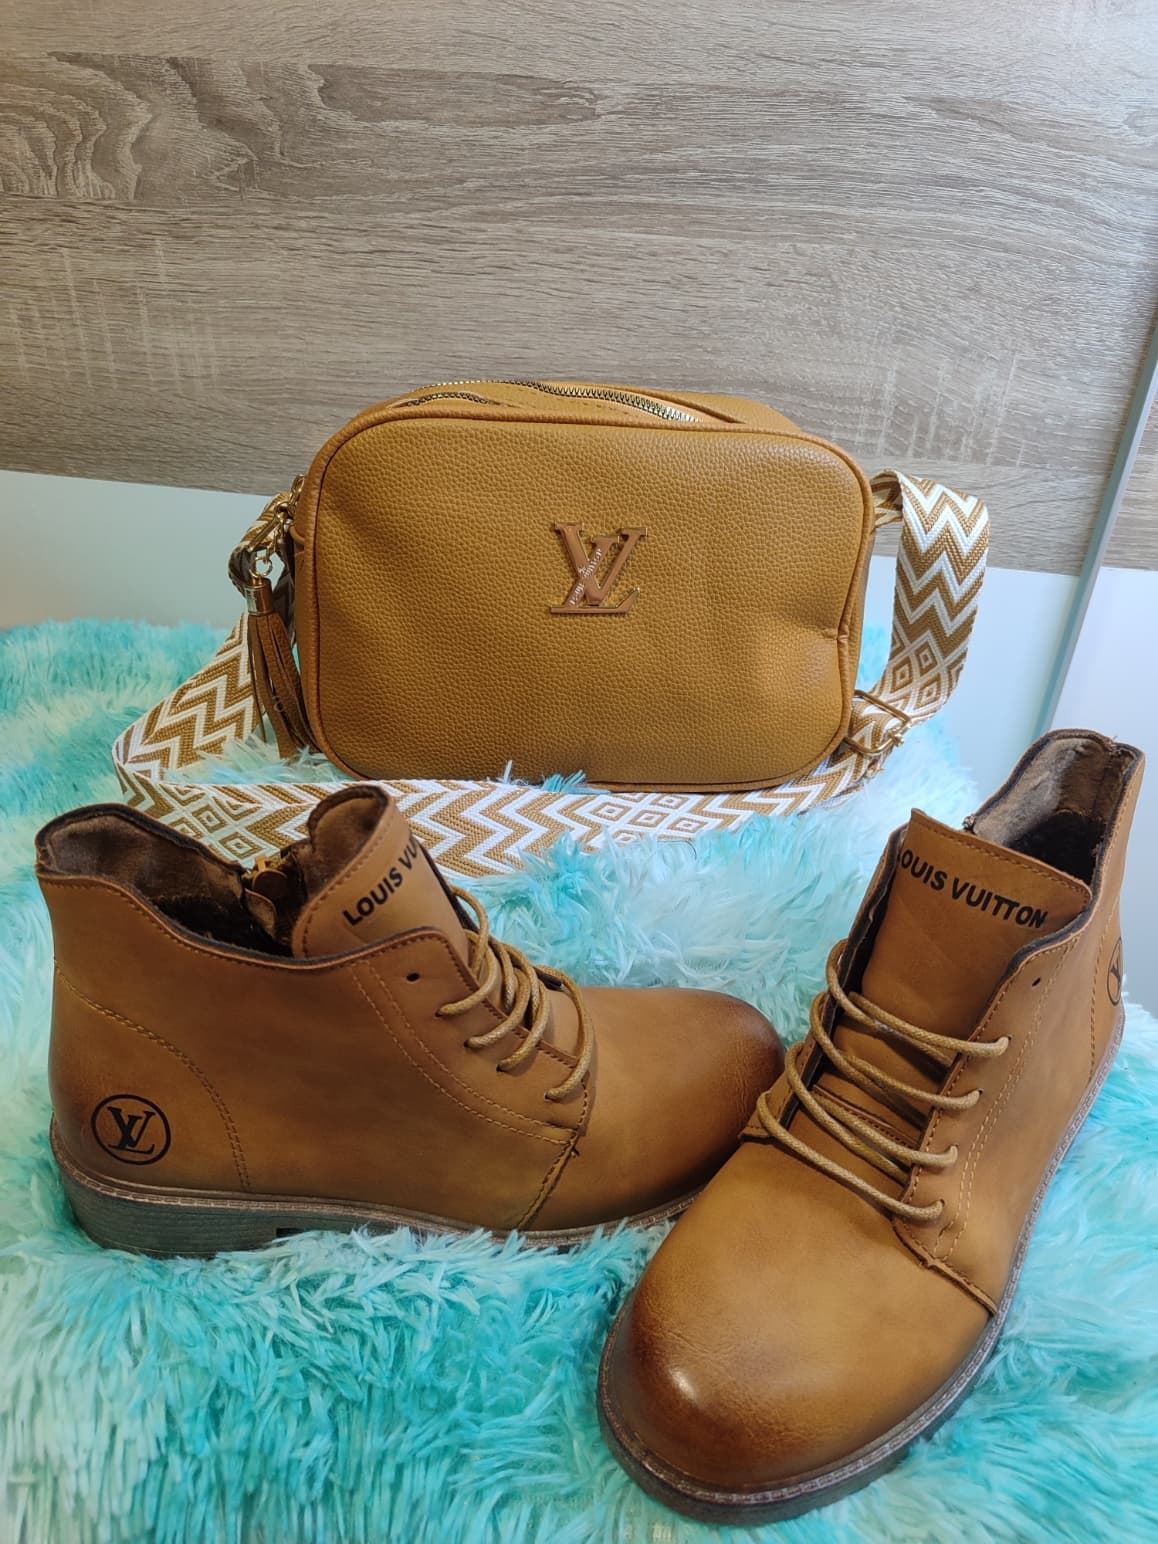 Conjunto de bolso y botas Louis Vuitton - Imagen 2